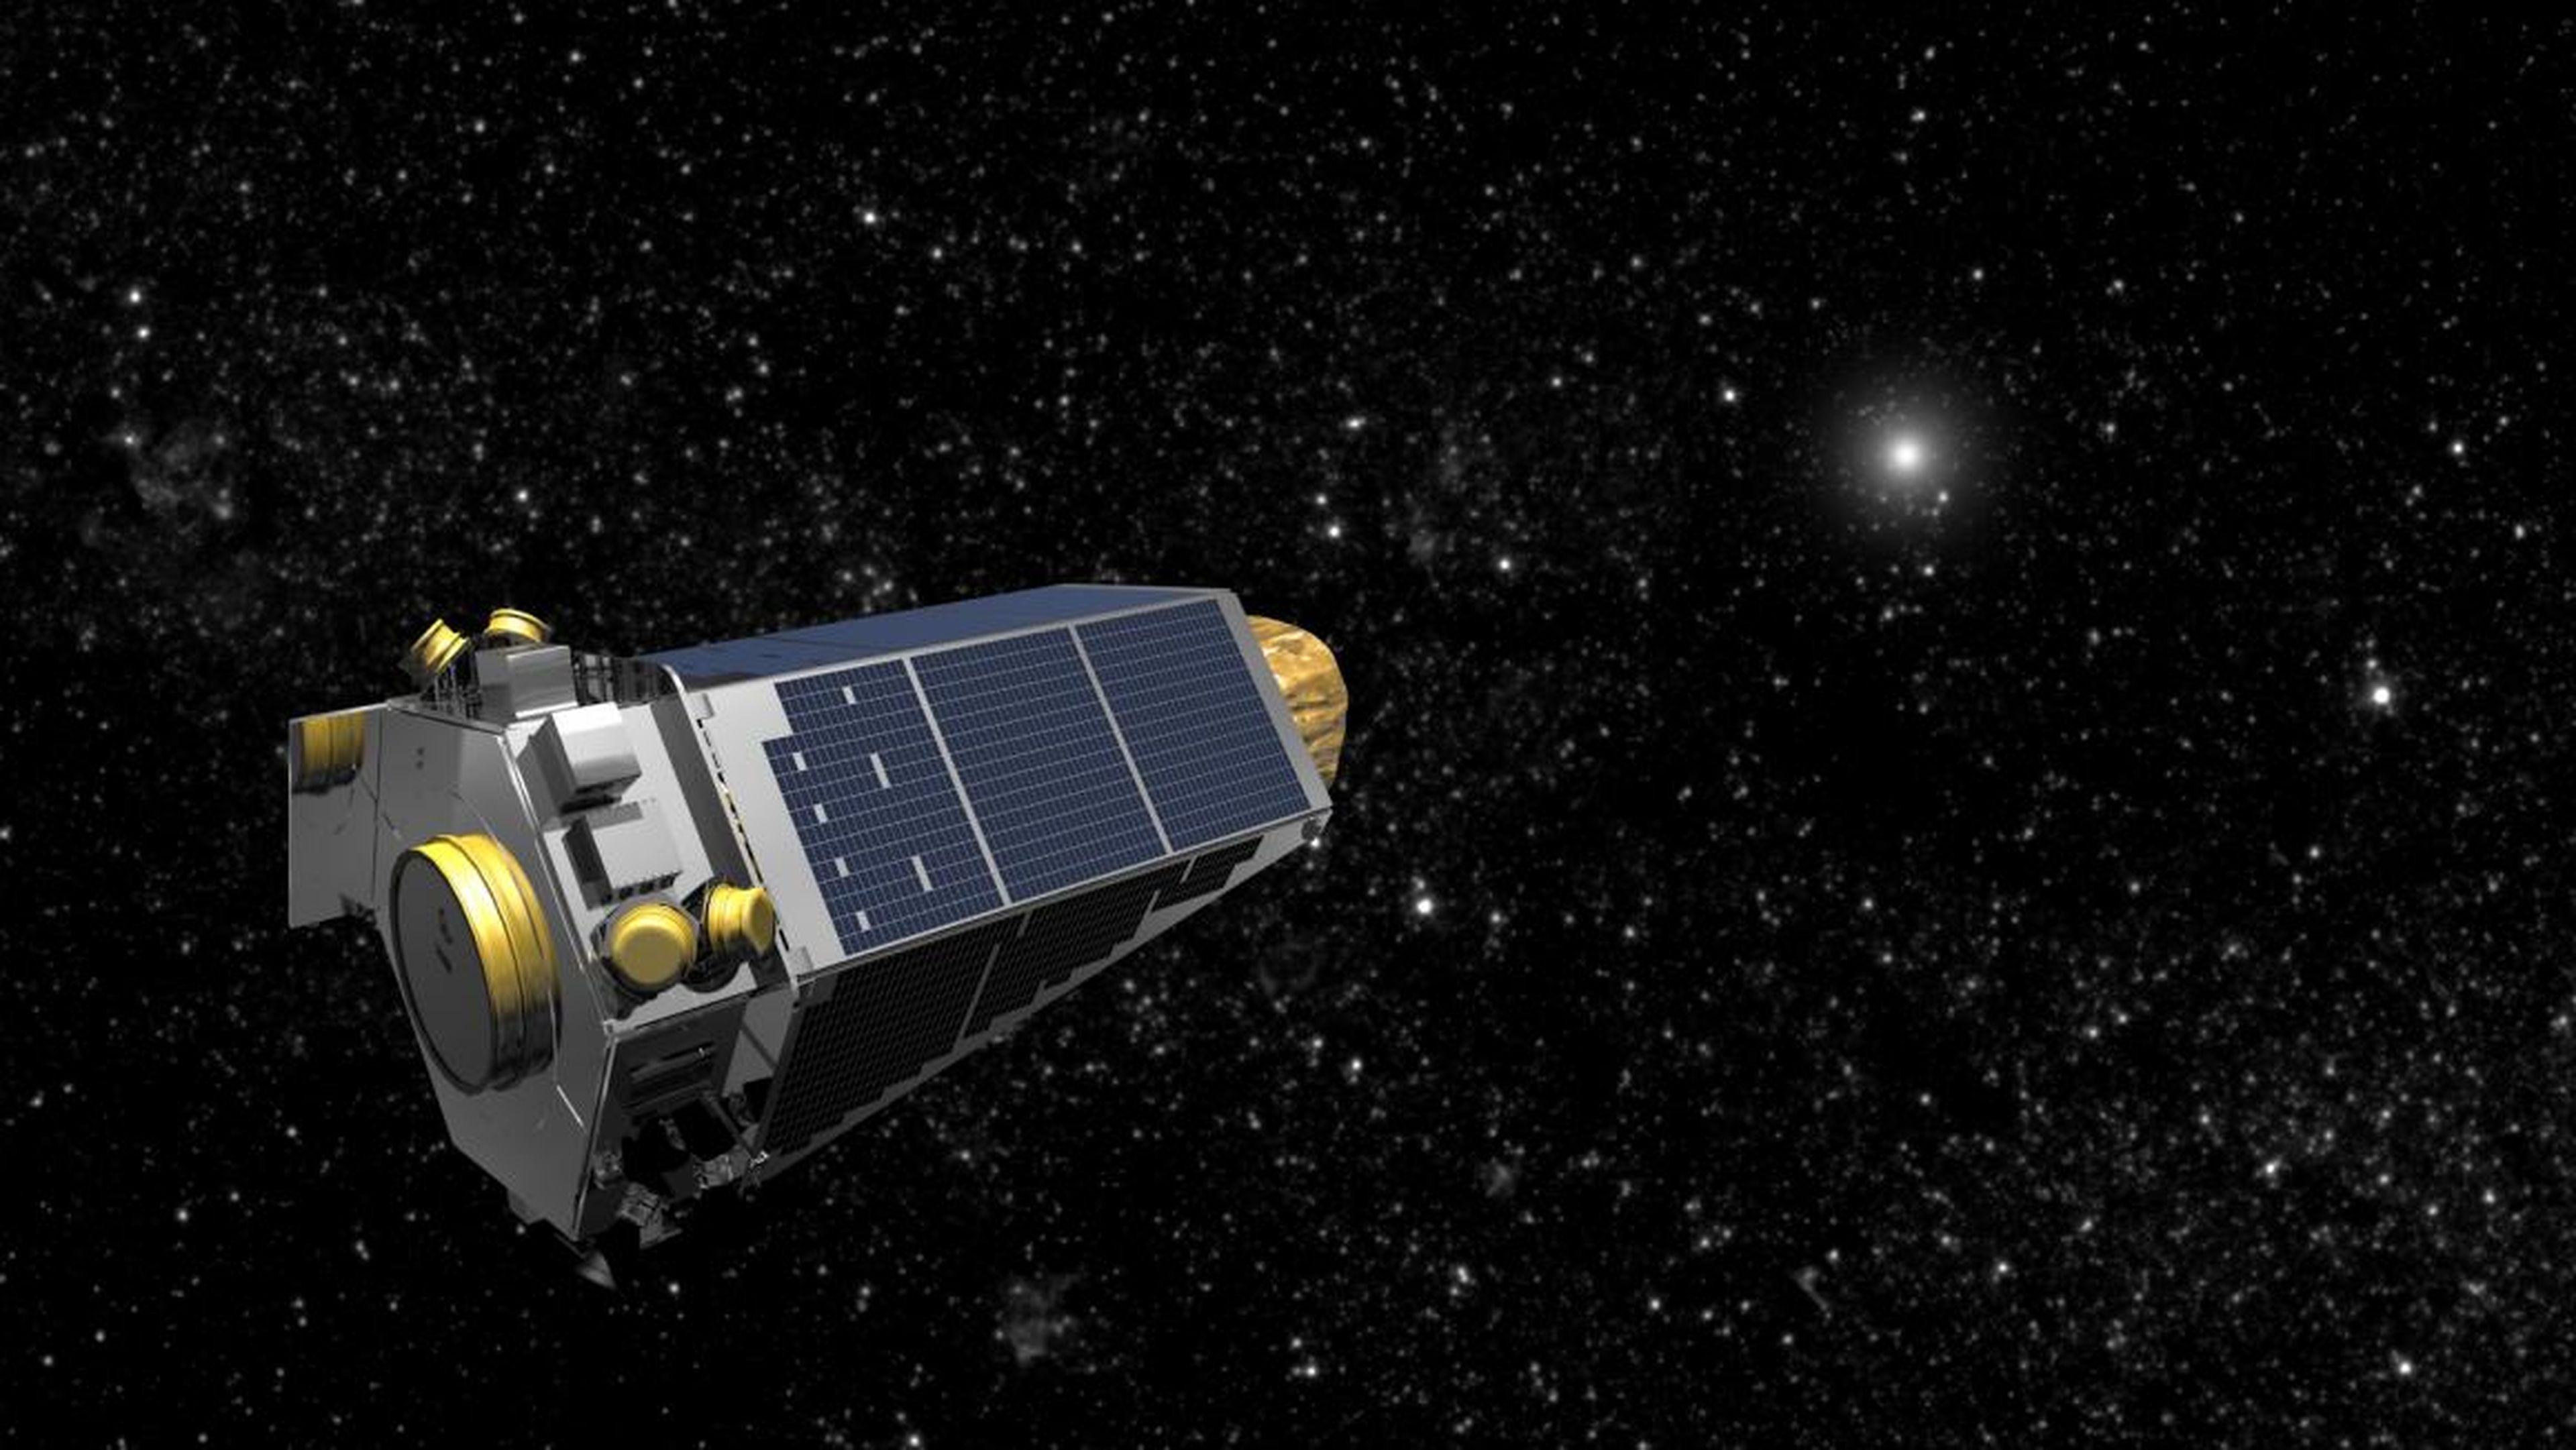 An illustration of NASA's Kepler space telescope.